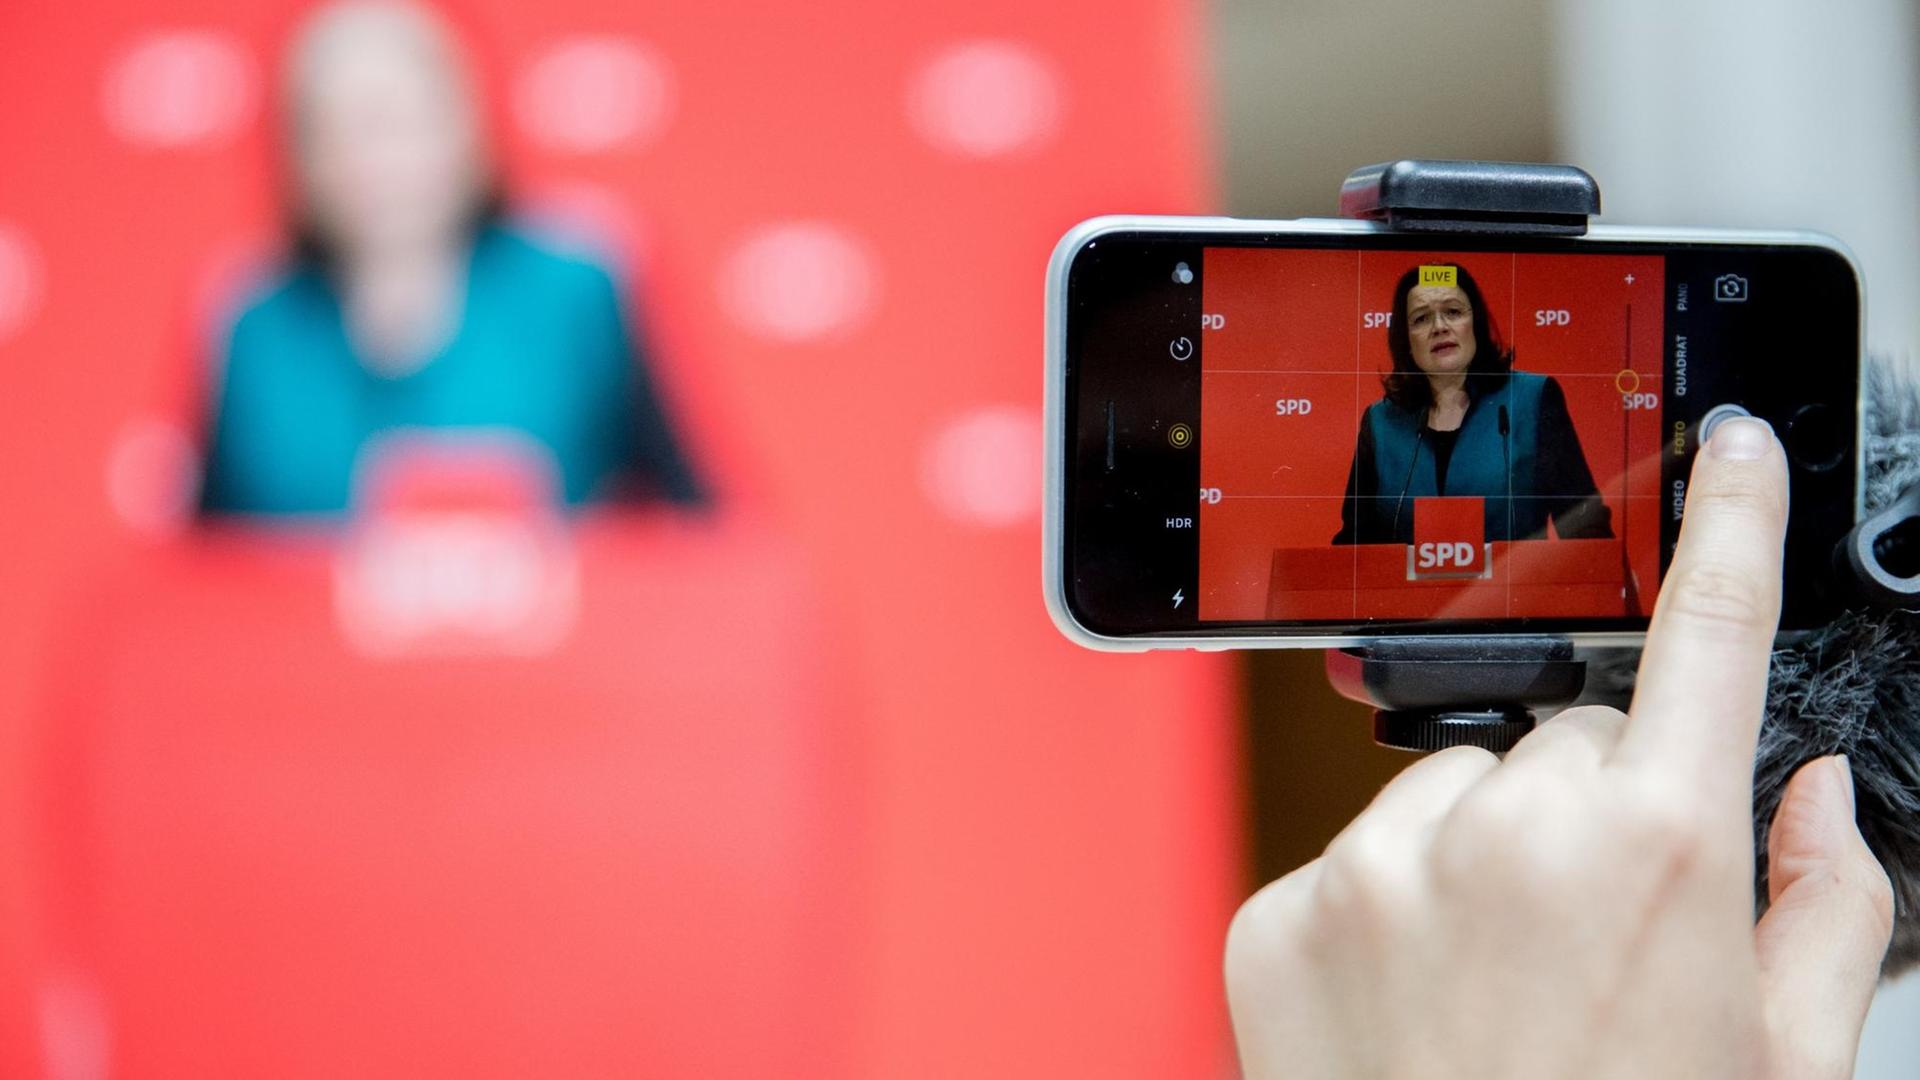 Bundesarbeitsministerin Andrea Nahles (SPD) ist auf einem Smartphone-Display zu sehen.